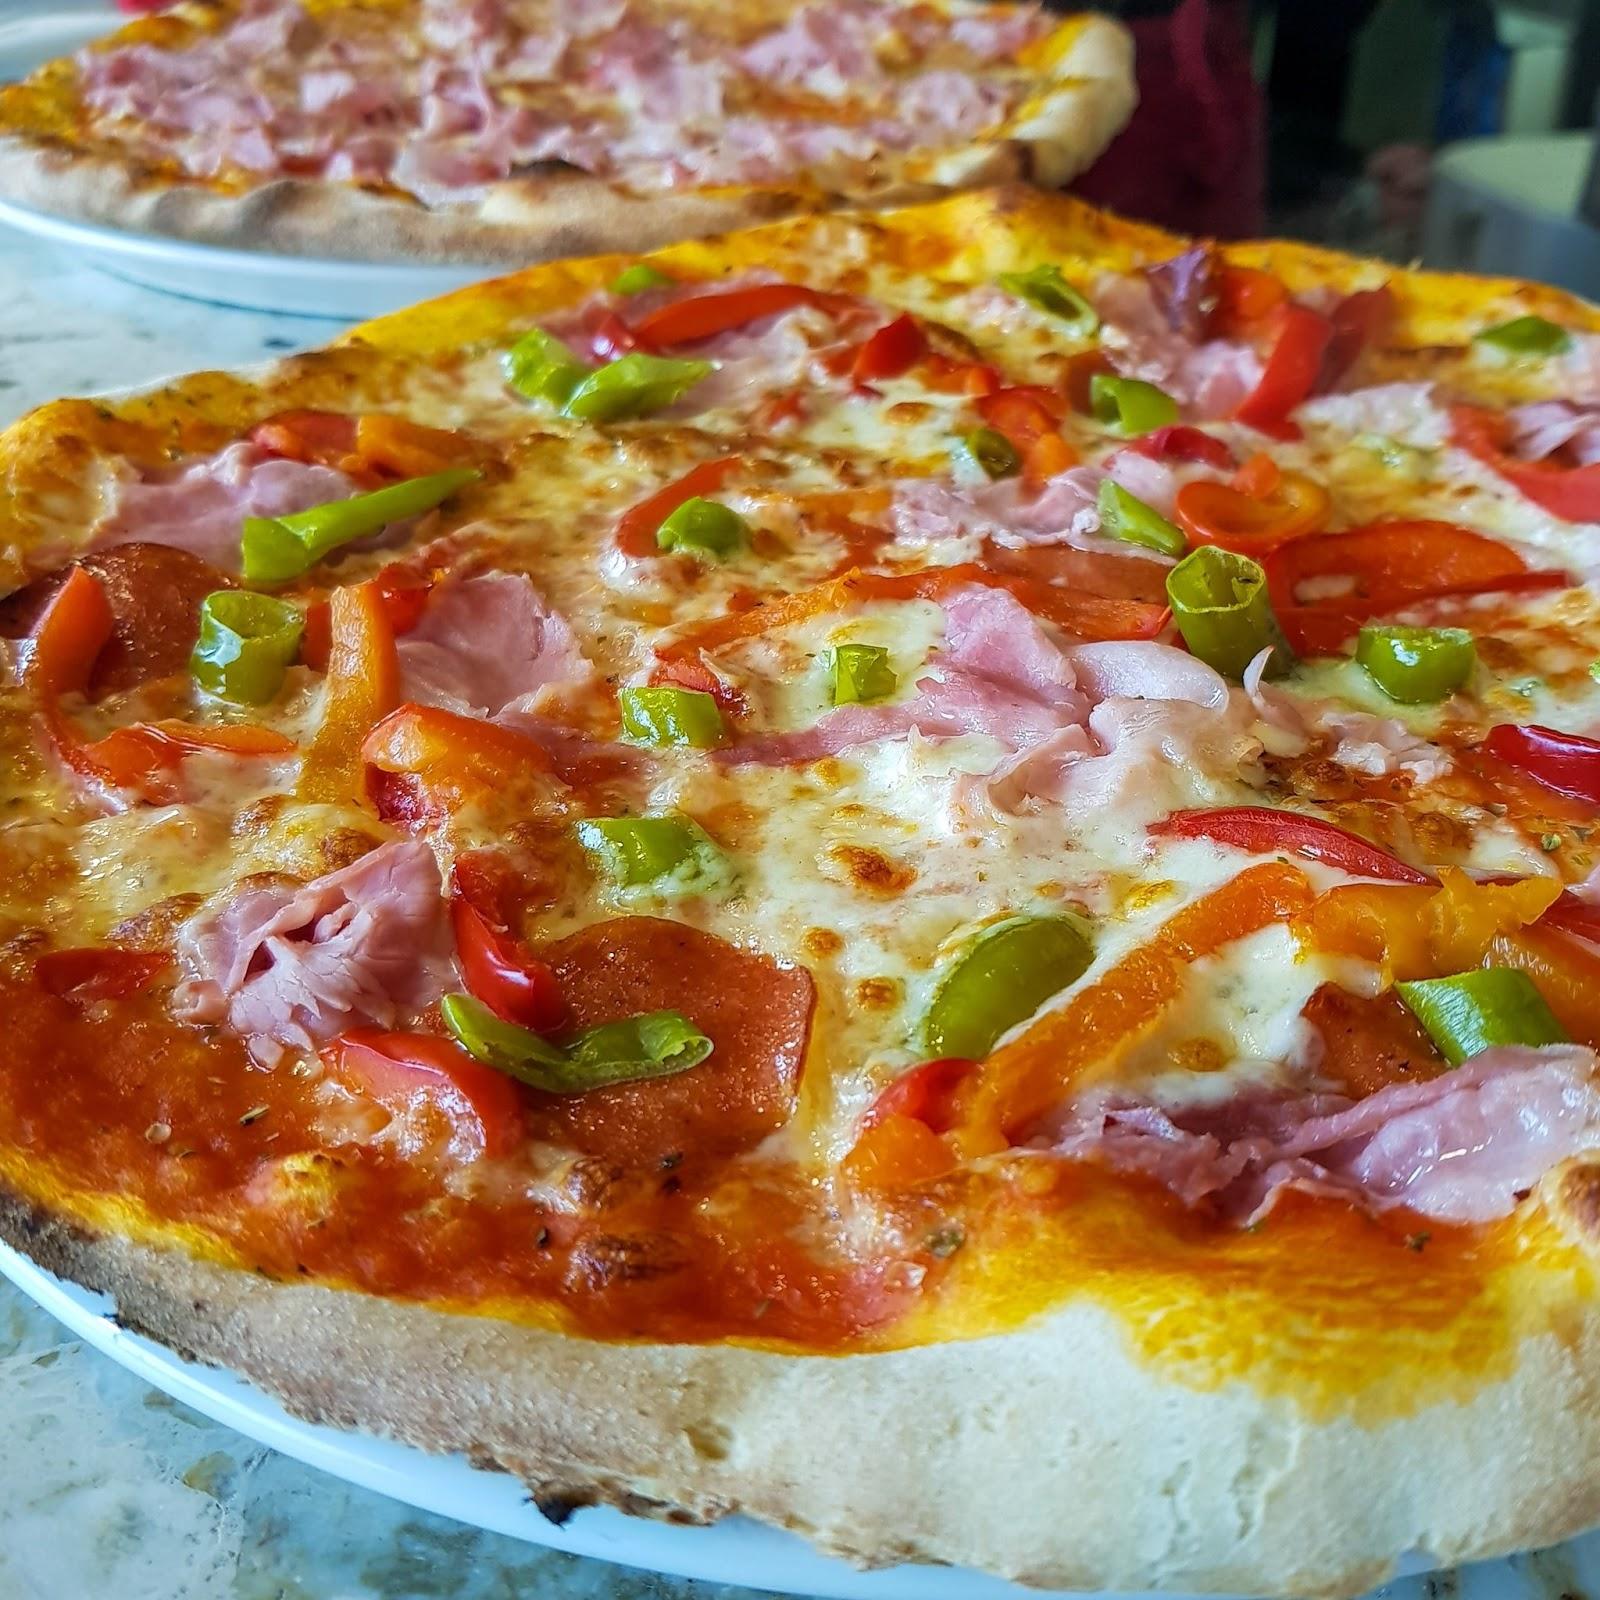 Restaurant "Pizzamanufaktur" in Wurster Nordseeküste